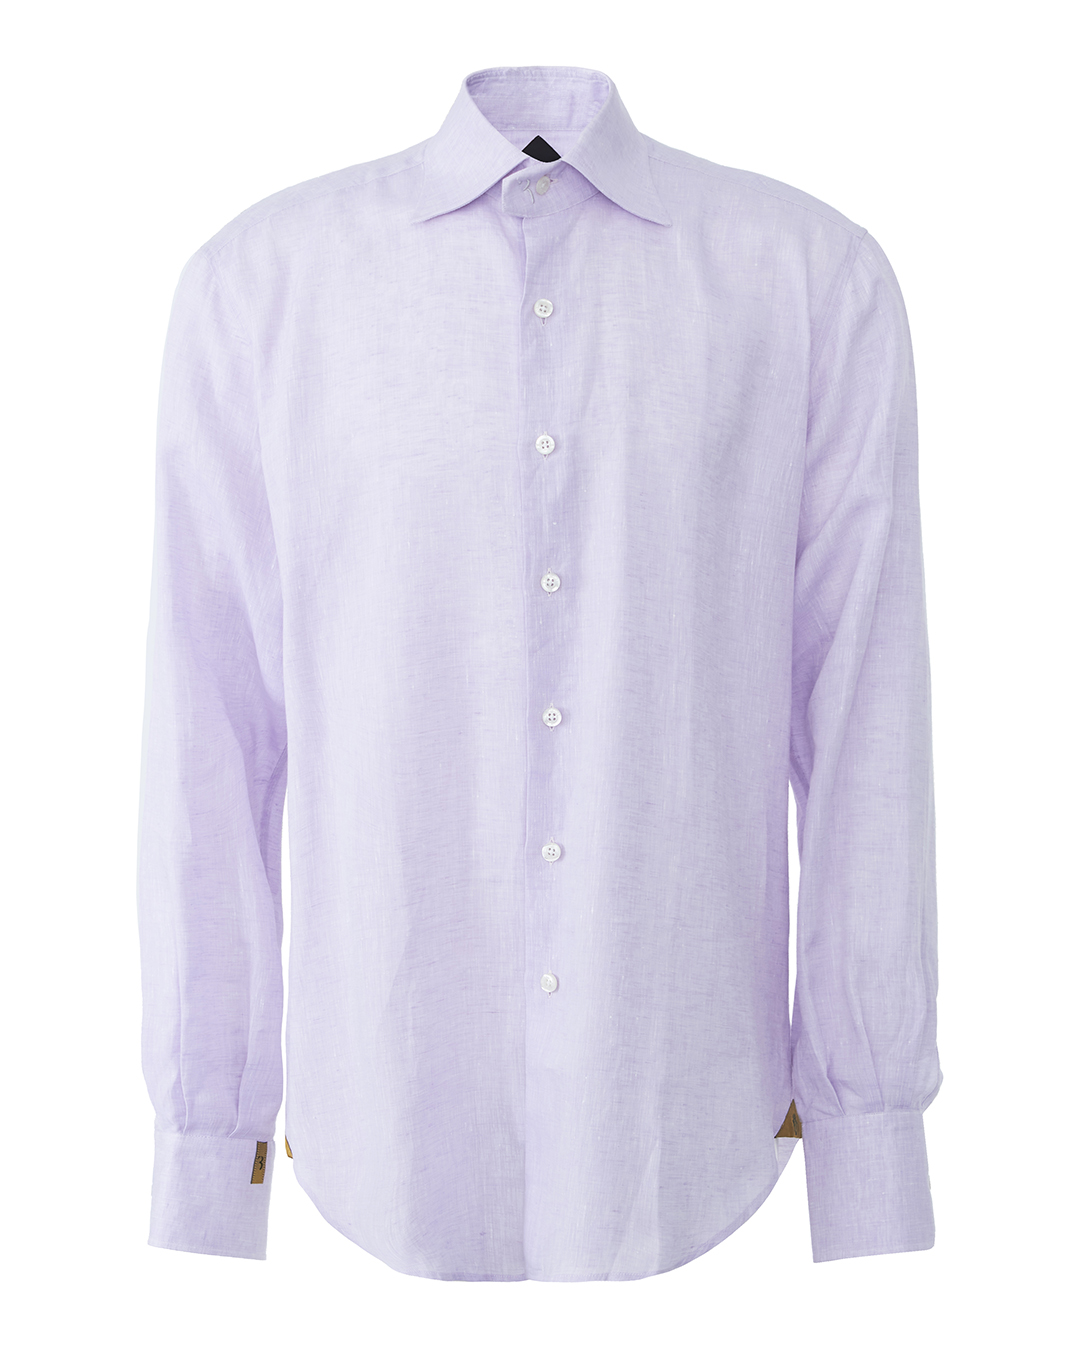 хлопковая рубашка BILLIONAIRE incerun повседневная мужская рубашка летняя пляжная рубашка геометрический принт гавайская рубашка